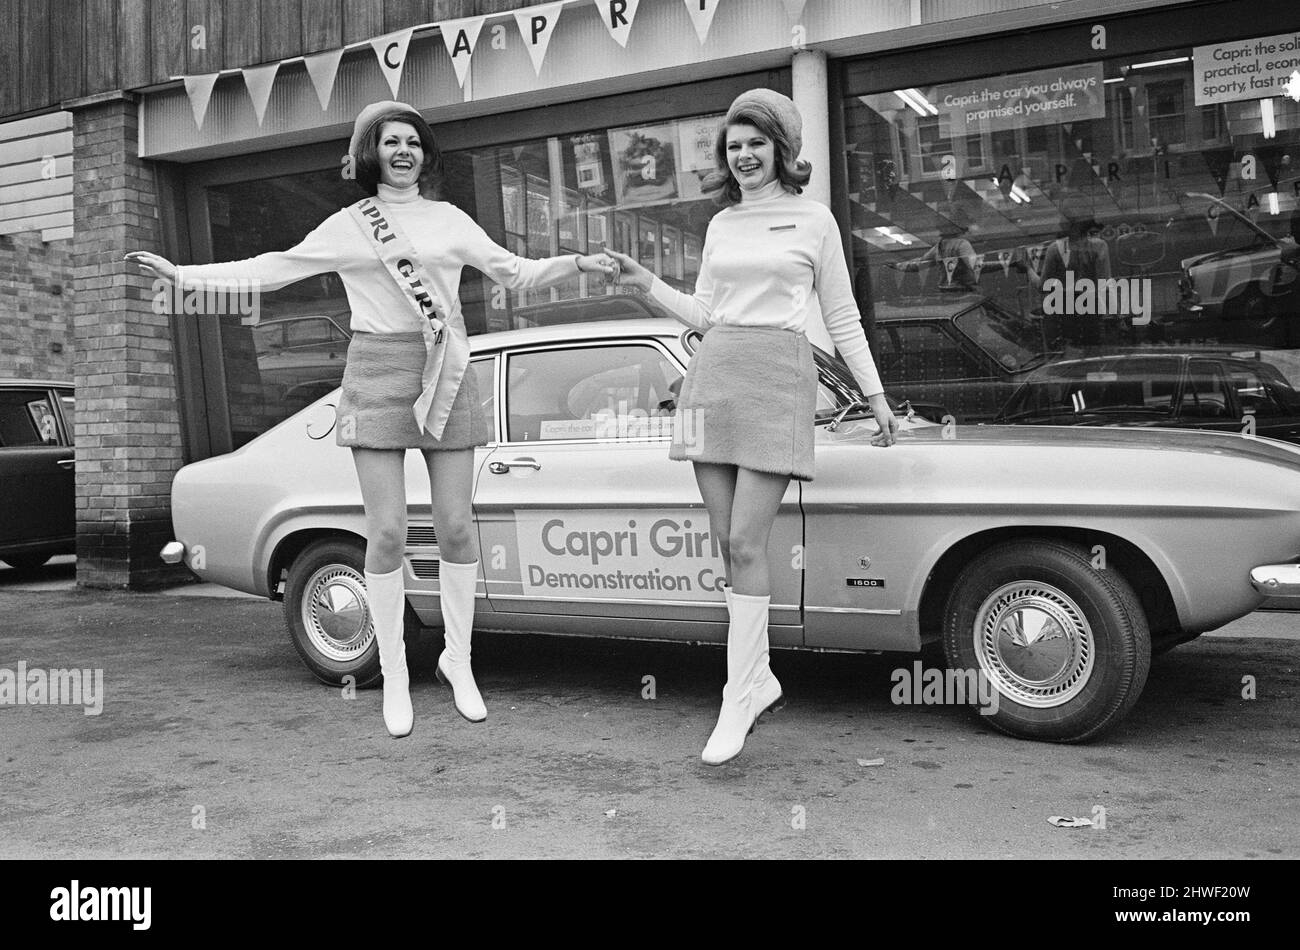 Der Start des Ford Capri Mk1.das Bild wurde in einem Showroom von Autohändler Dennis J im Reading-Bereich aufgenommen und zeigt den neuen Ford Capri auf dem Vorplatz und die Promotiondamen, die den Tag genießen. Der Ford-Slogan, der im Rahmen der Aktion verwendet wurde, lautete: „Das Auto, das Sie sich immer versprochen haben“ der erste Ford Capri wurde im Januar 1969 auf dem Brüsseler Automobilsalon vorgestellt, der Verkauf begann im folgenden Monat. Die Absicht war, in Europa den Erfolg zu reproduzieren, den Ford mit dem nordamerikanischen Ford Mustang hatte; ein europäisches Pony-Auto zu produzieren Bild aufgenommen am 14.. Februar 1969The Start o Stockfoto